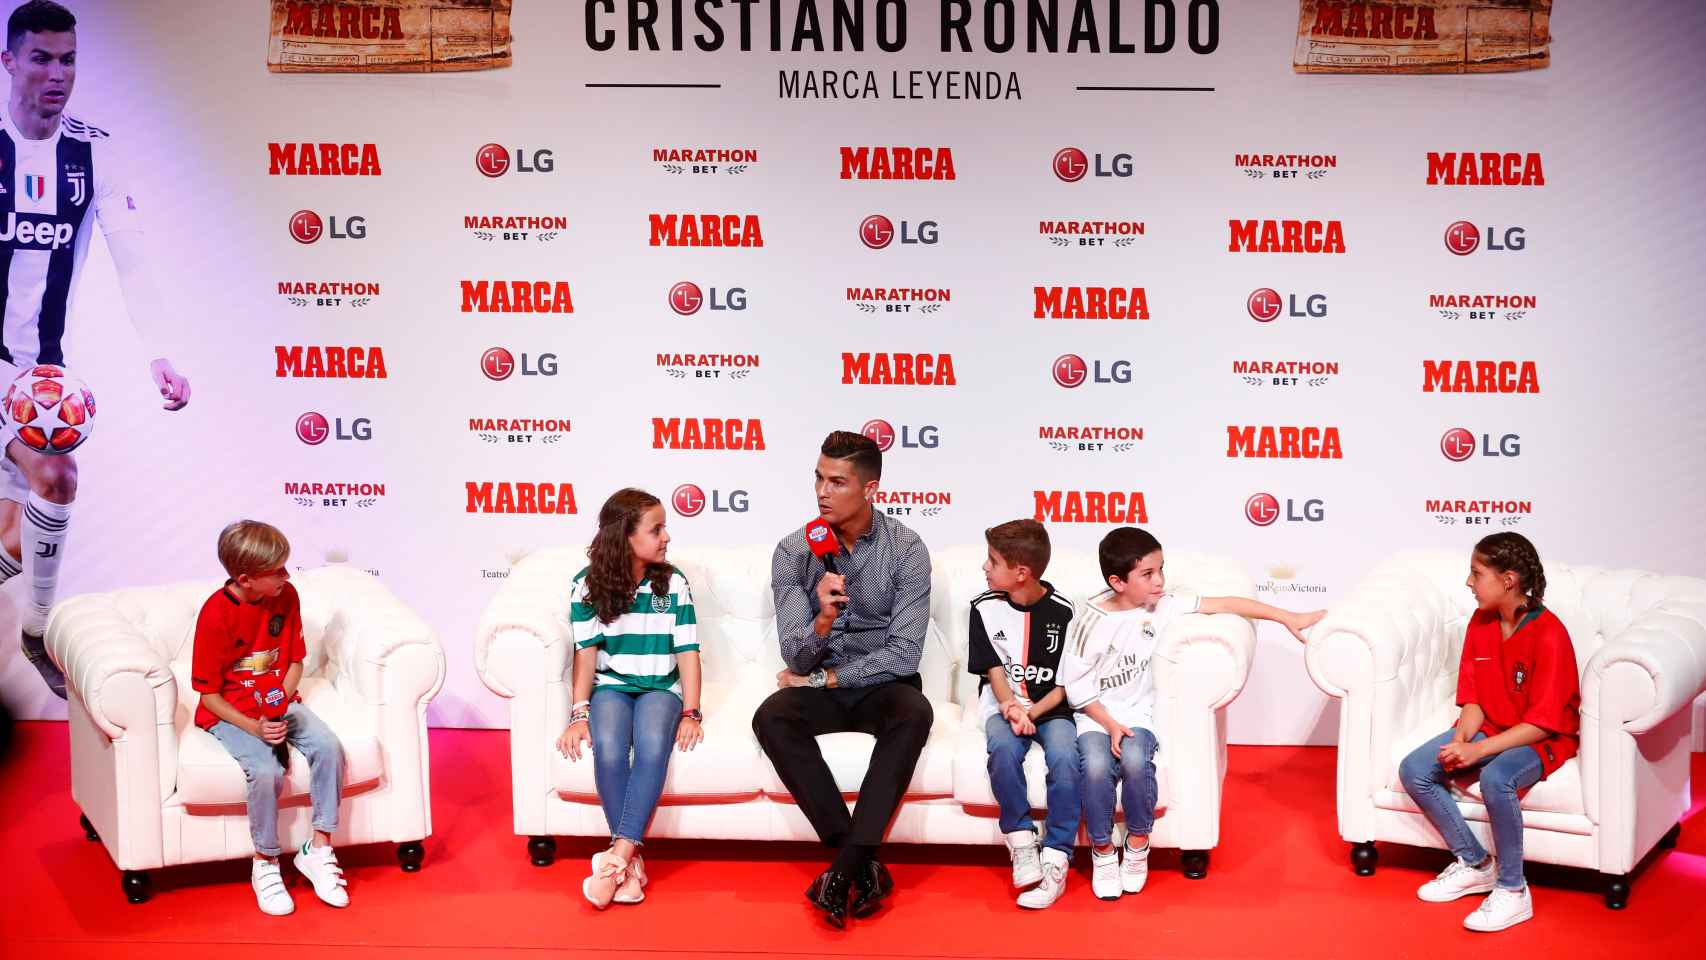 Cristiano, rodeado de niños durante la entrega del MARCA Leyenda